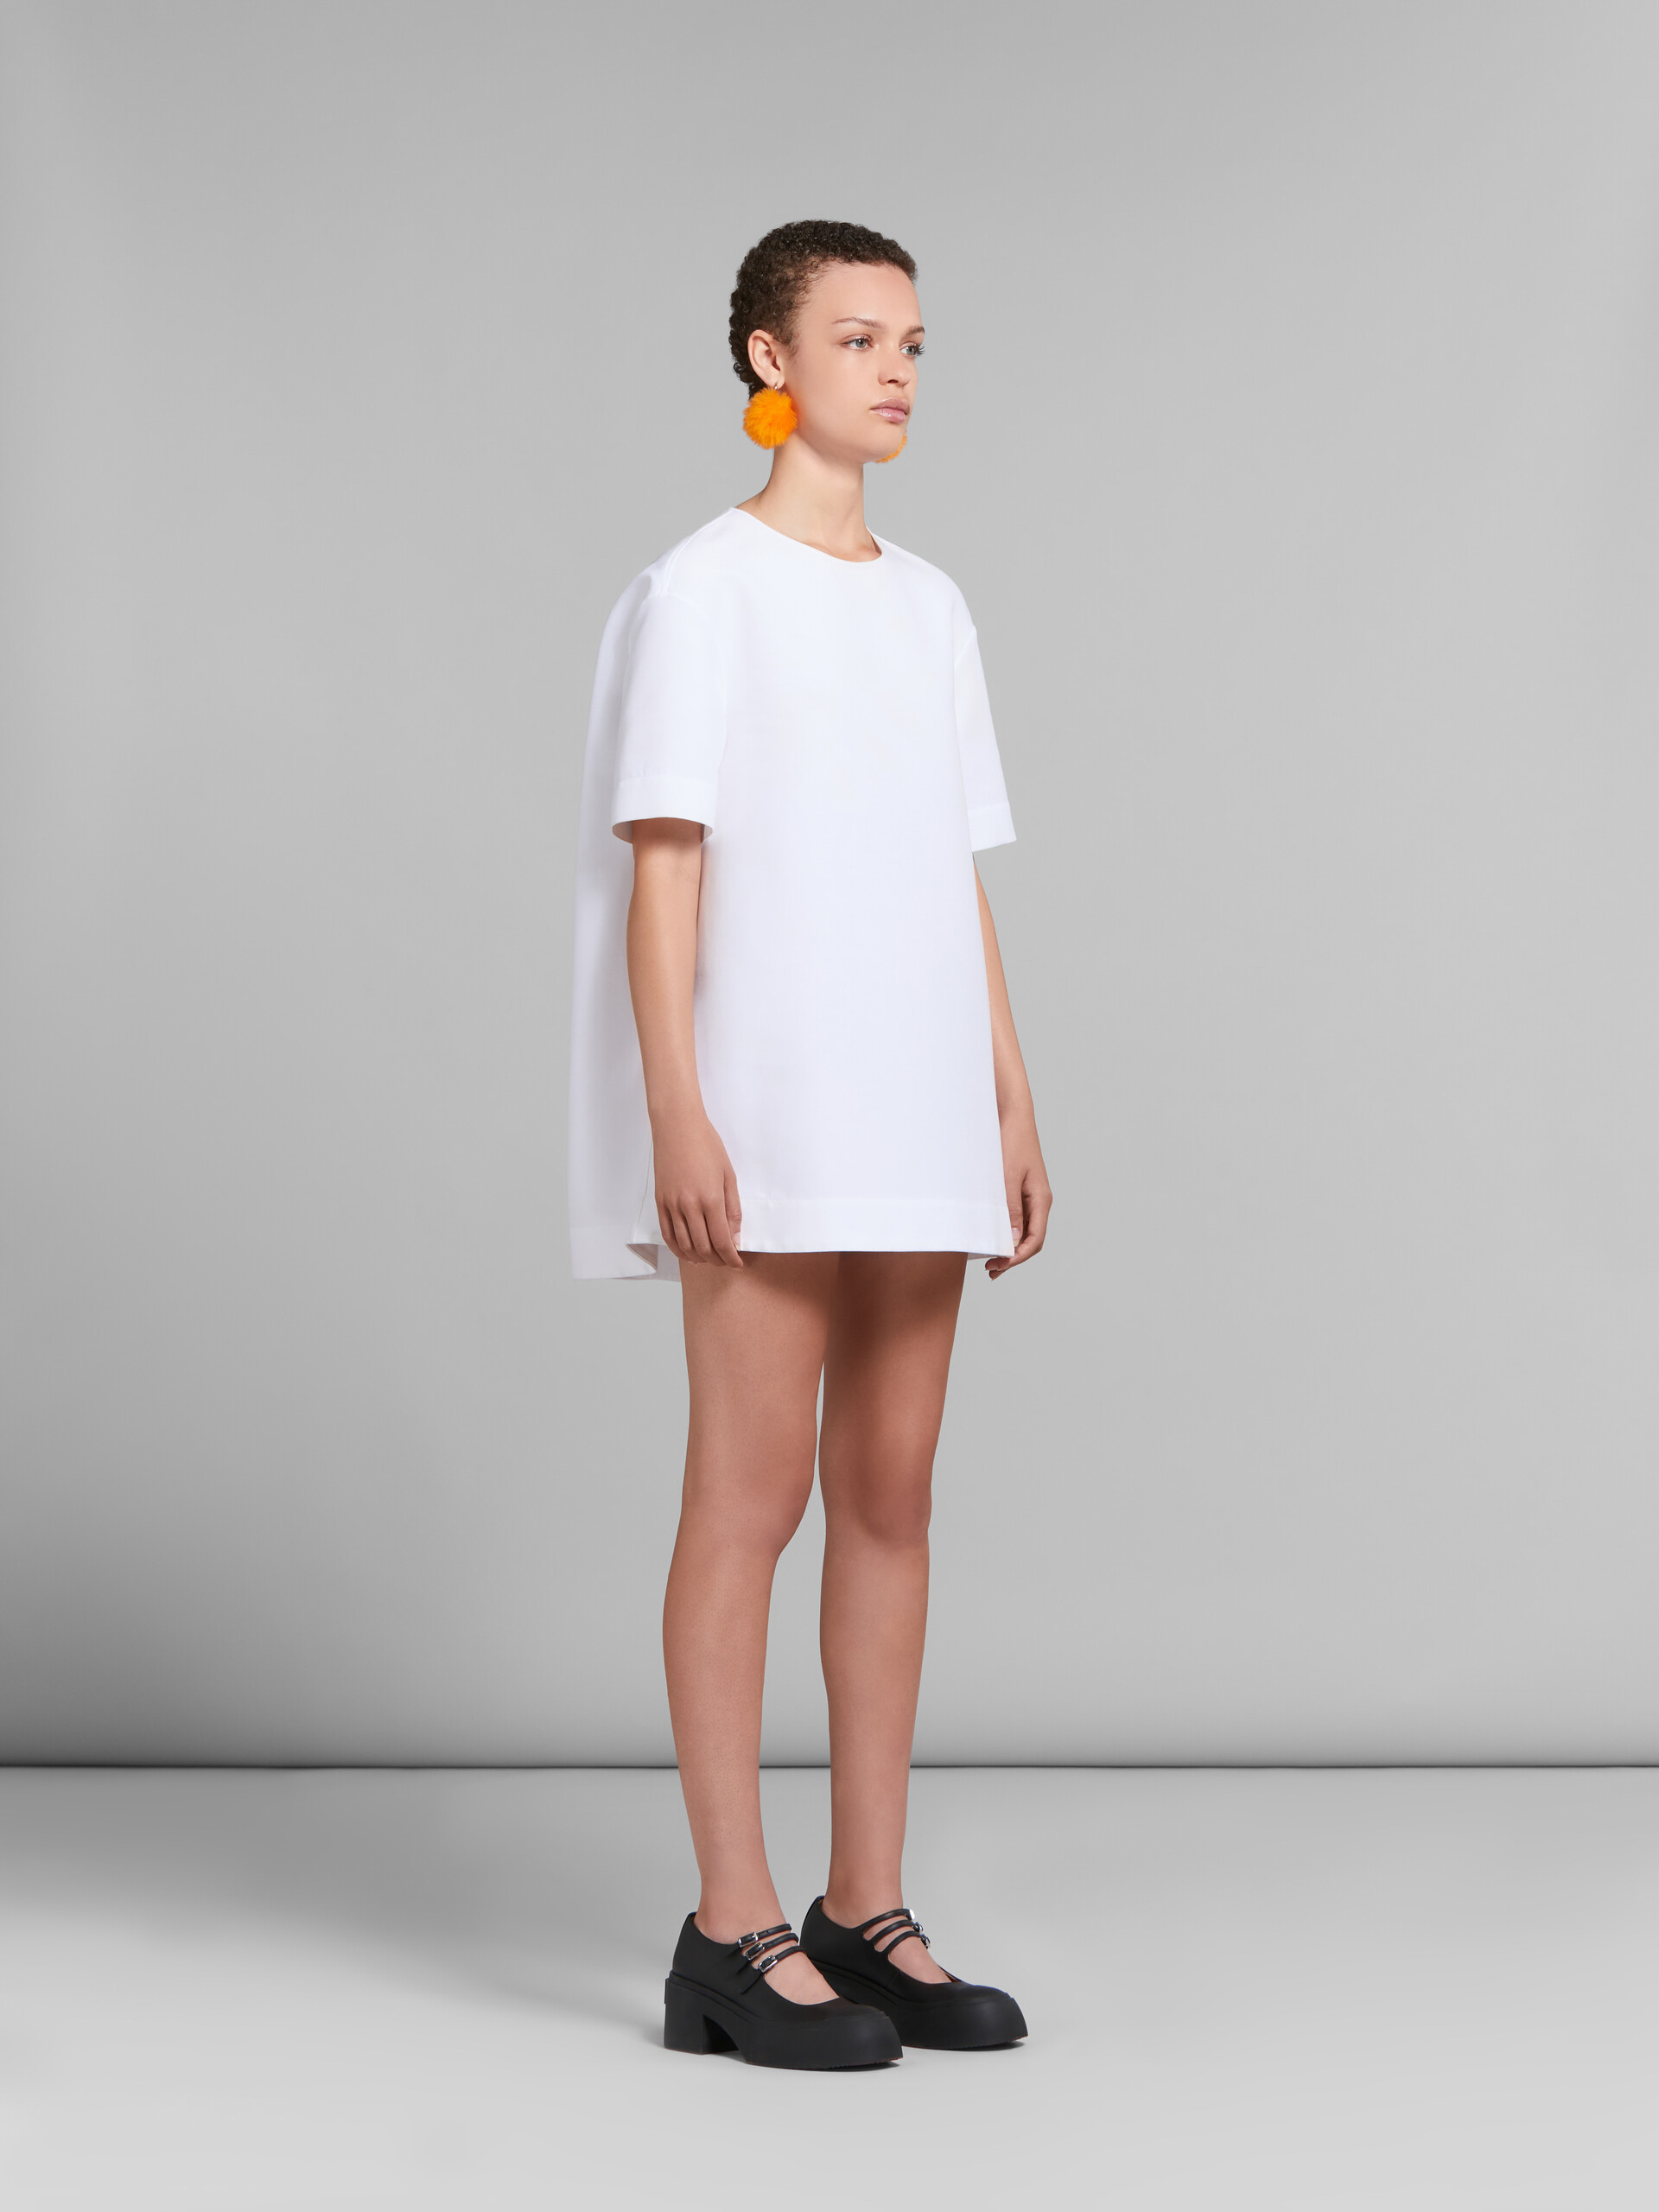 Vestido de cady blanco de corte mini cocoon - Vestidos - Image 6